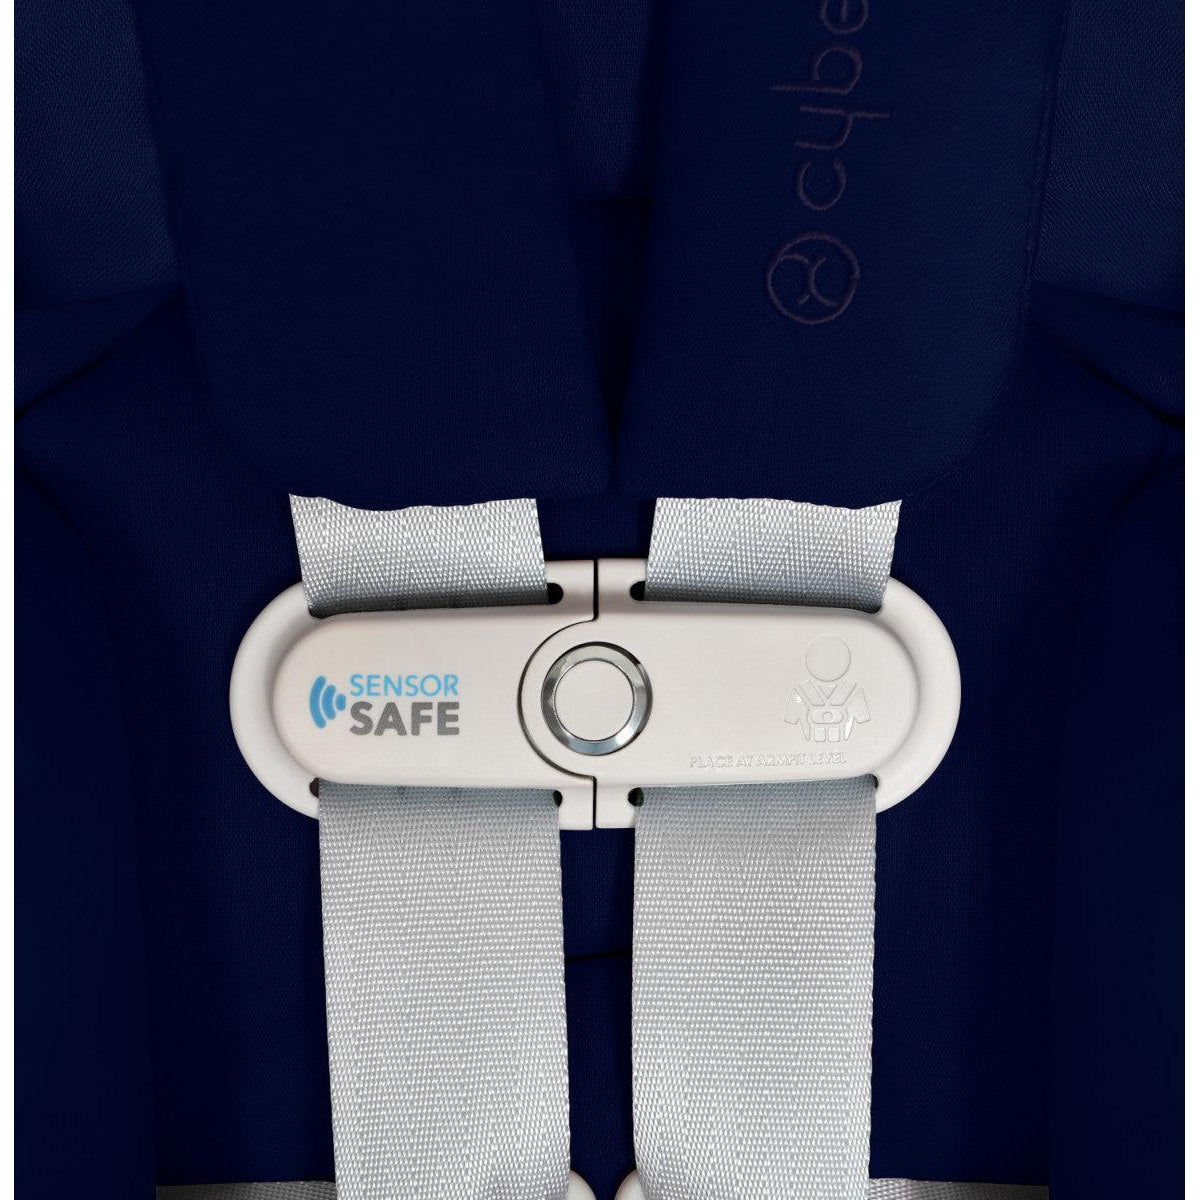 | Seat Little Cloud Cybex Q Twinkle Infant SensorSafe One Car Twinkle